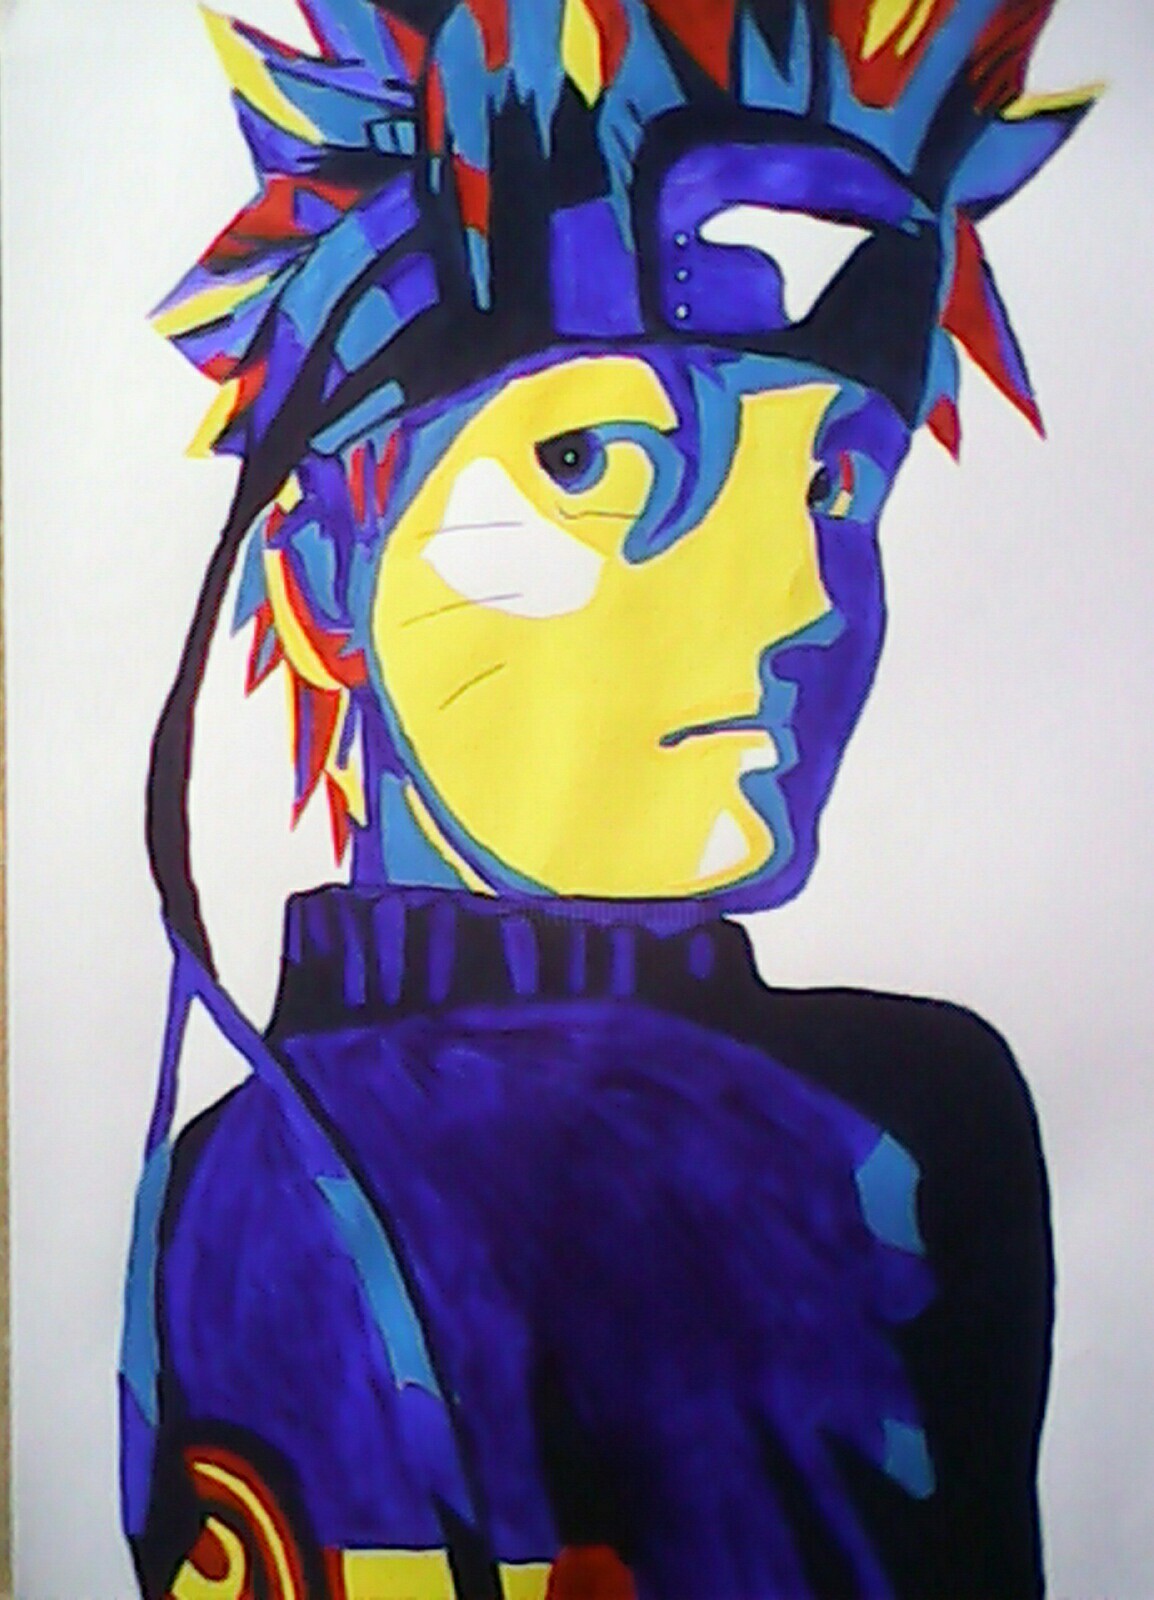 Naruto Pop Art, Painting by Oz | Artmajeur